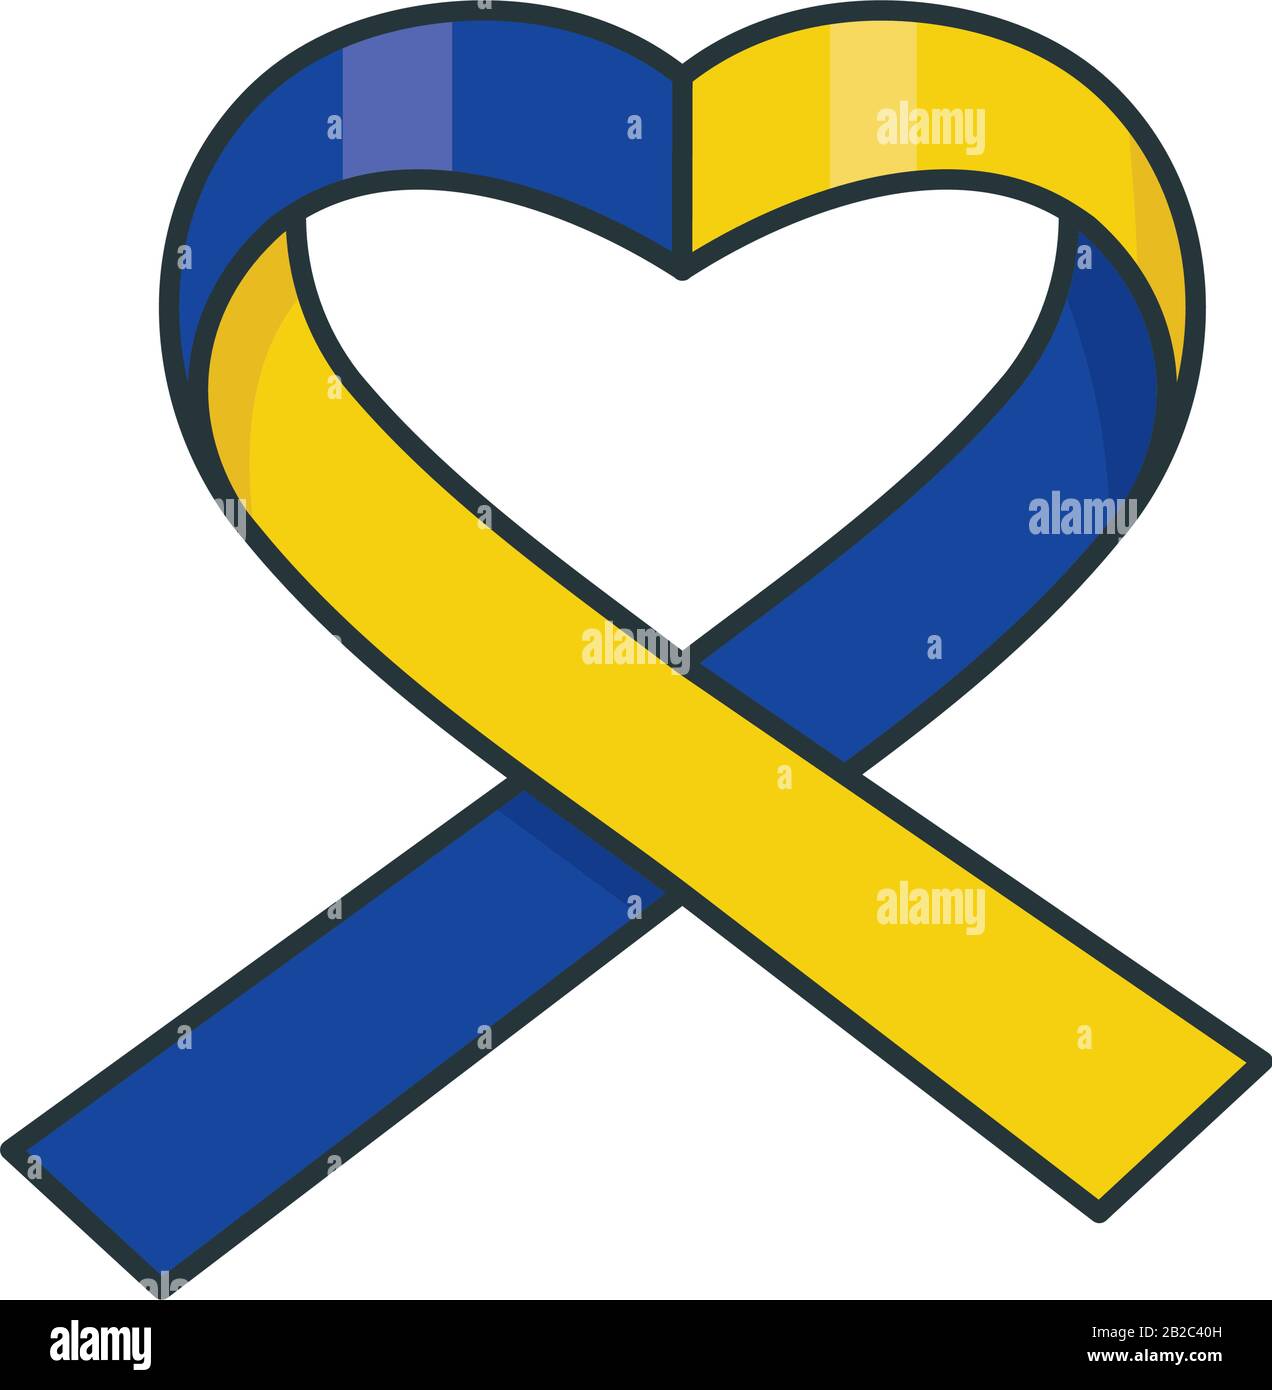 Illustration vectorielle isolée en ruban bleu et jaune du cœur pour Le jour du syndrome De Down. Symbole de sensibilisation aux troubles génétiques. Illustration de Vecteur